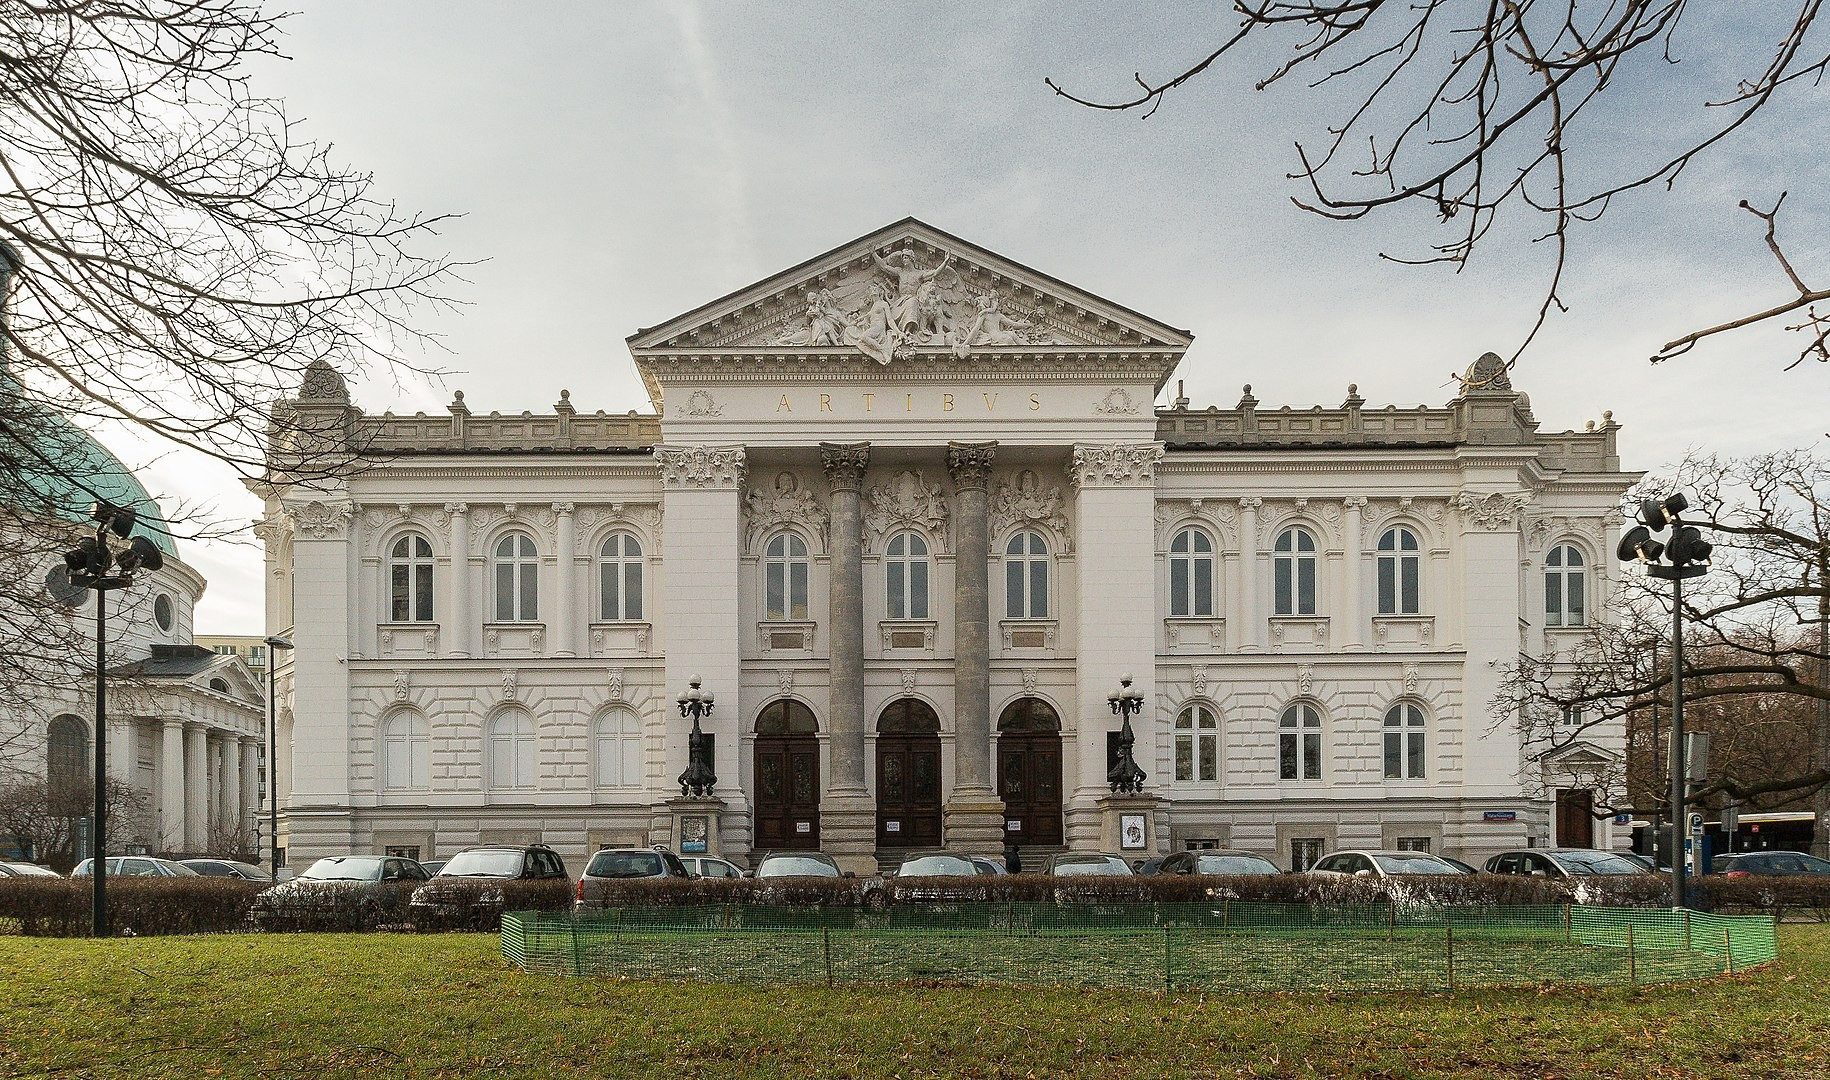 Zachęta National Gallery of Art, Poland